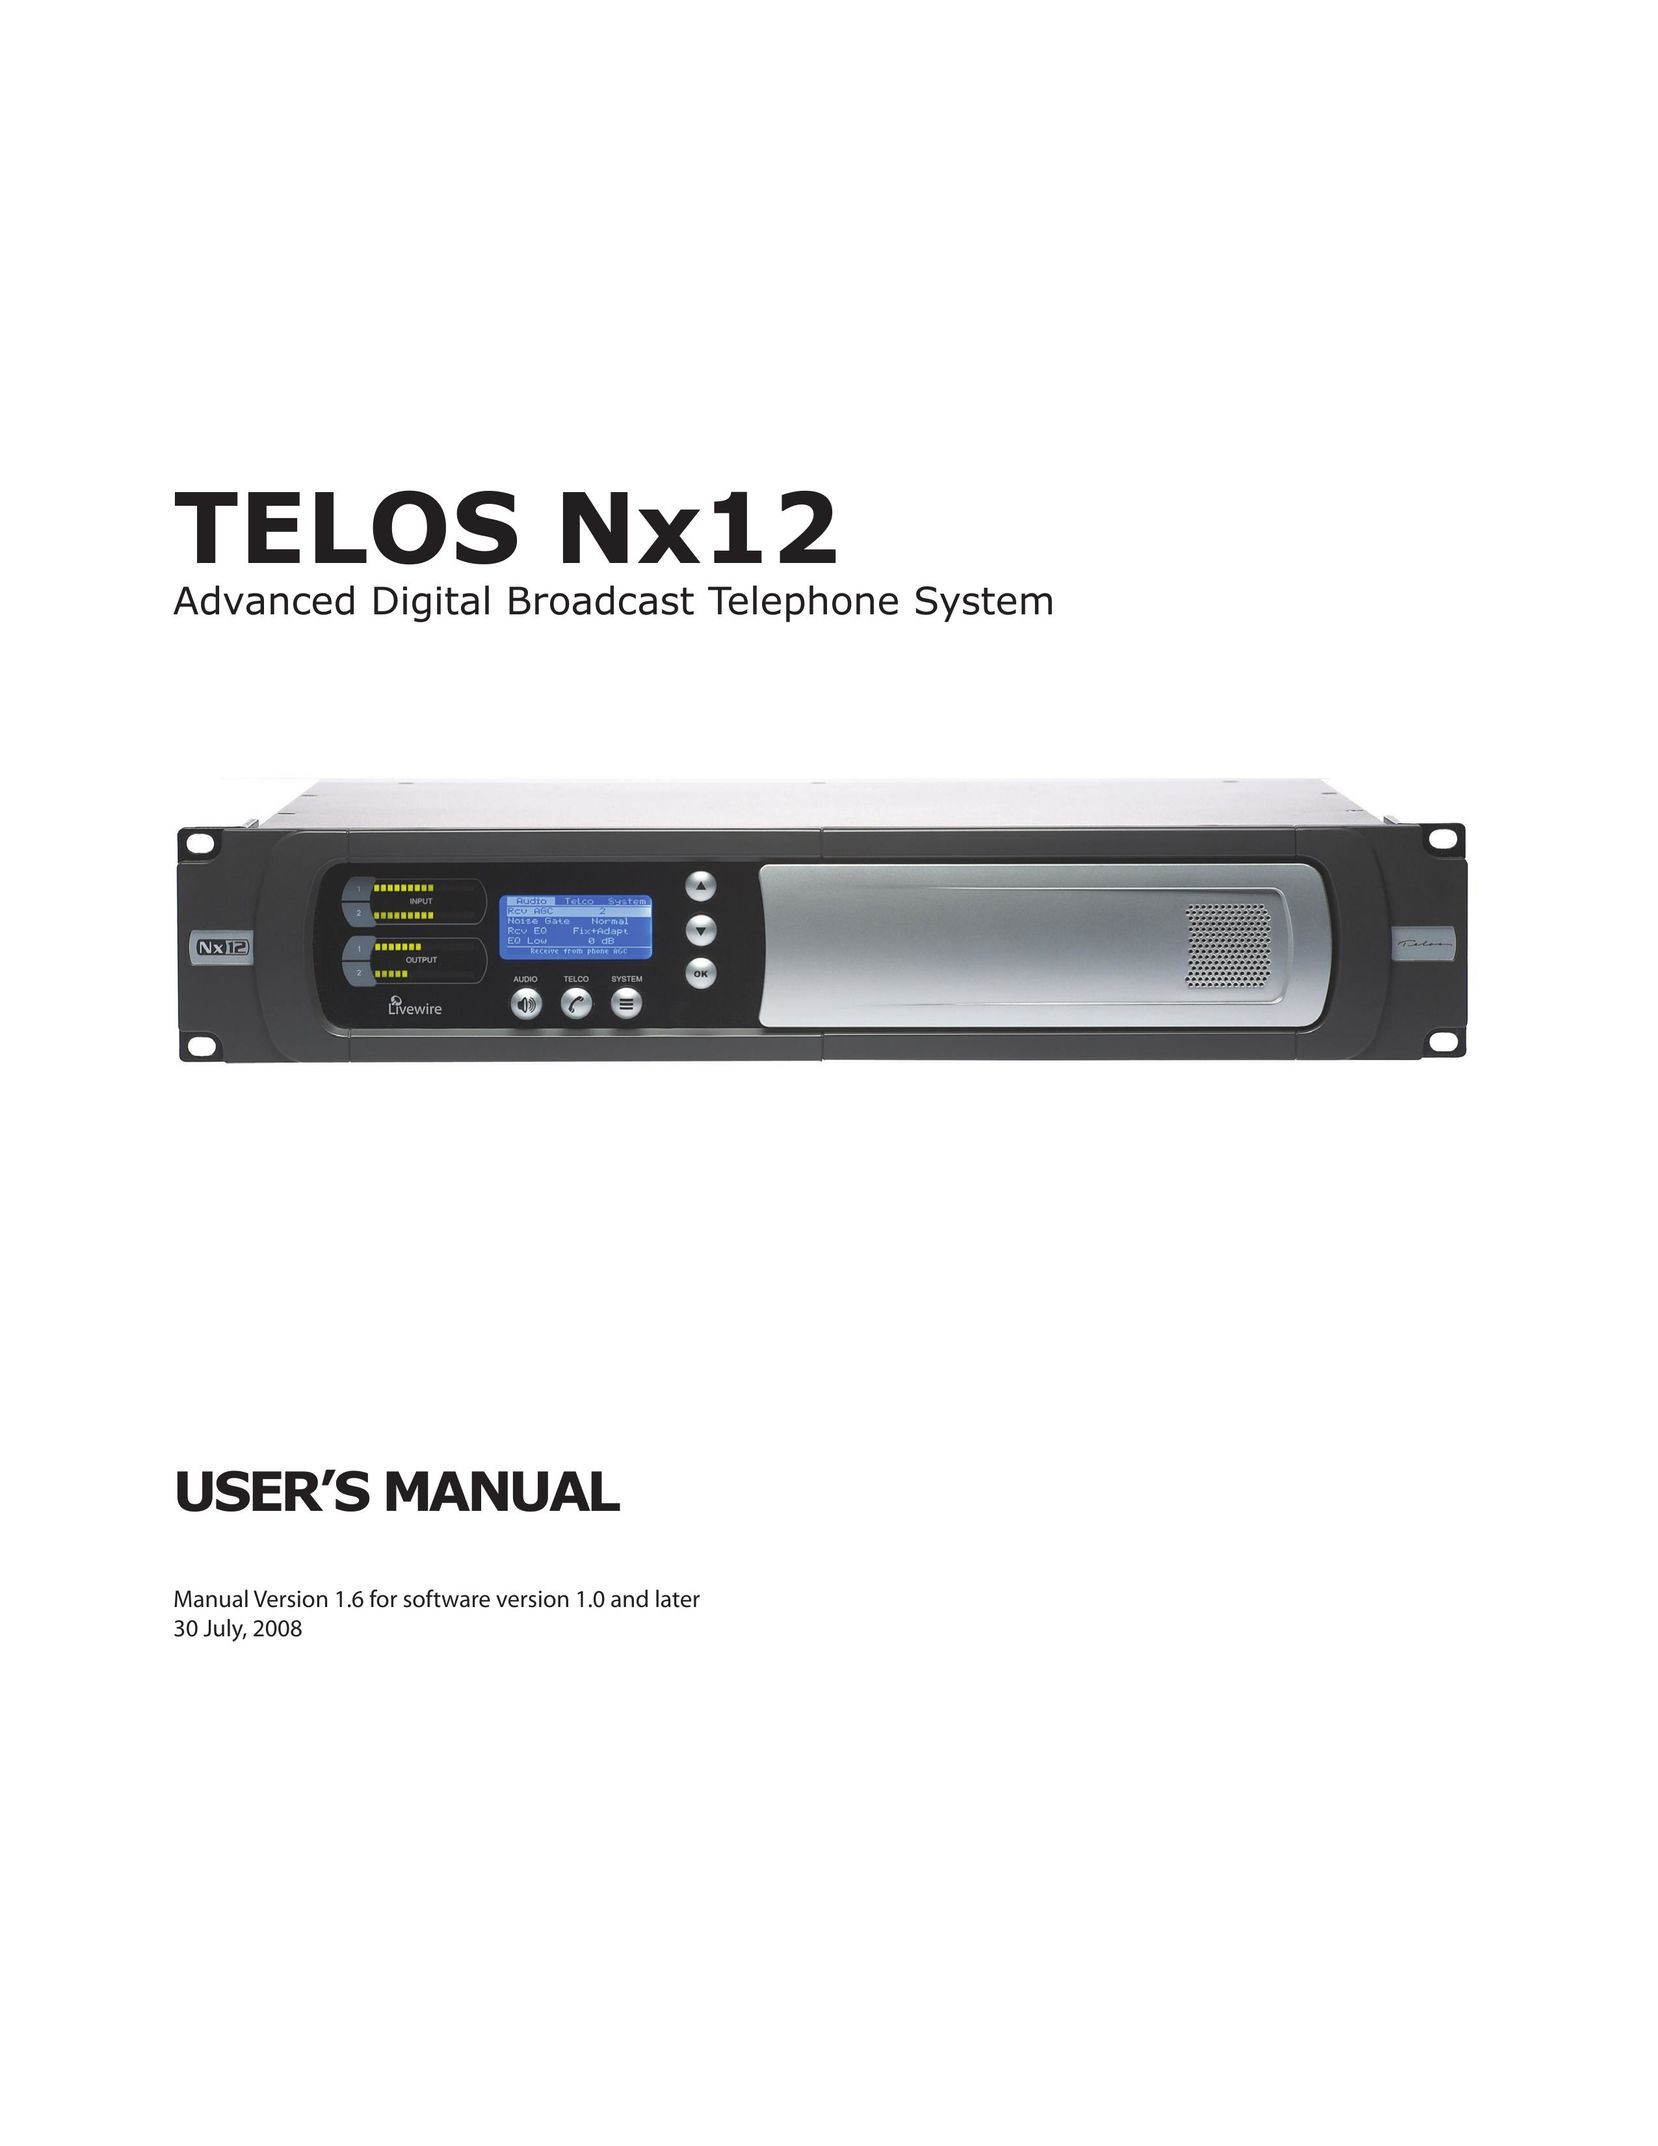 Telos NX12 Telephone User Manual